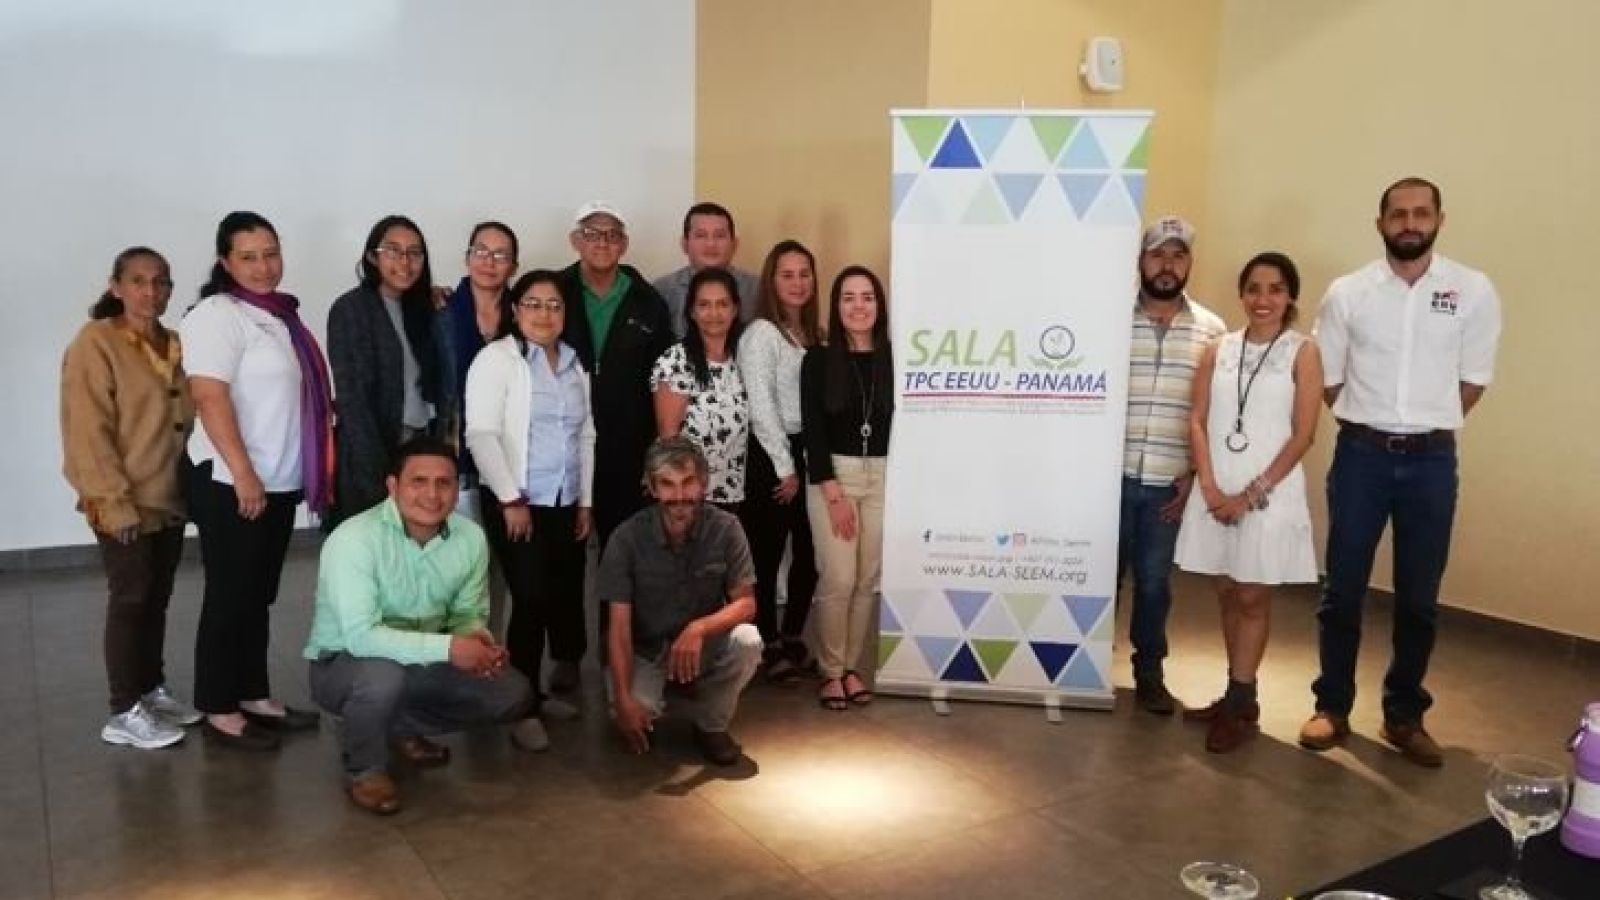 foto de noticia SALA-SEEM Organiza: Reunión de divulgación y taller con miembros de la comunidad, ONGs ambientales, representantes de beneficios de café y productores